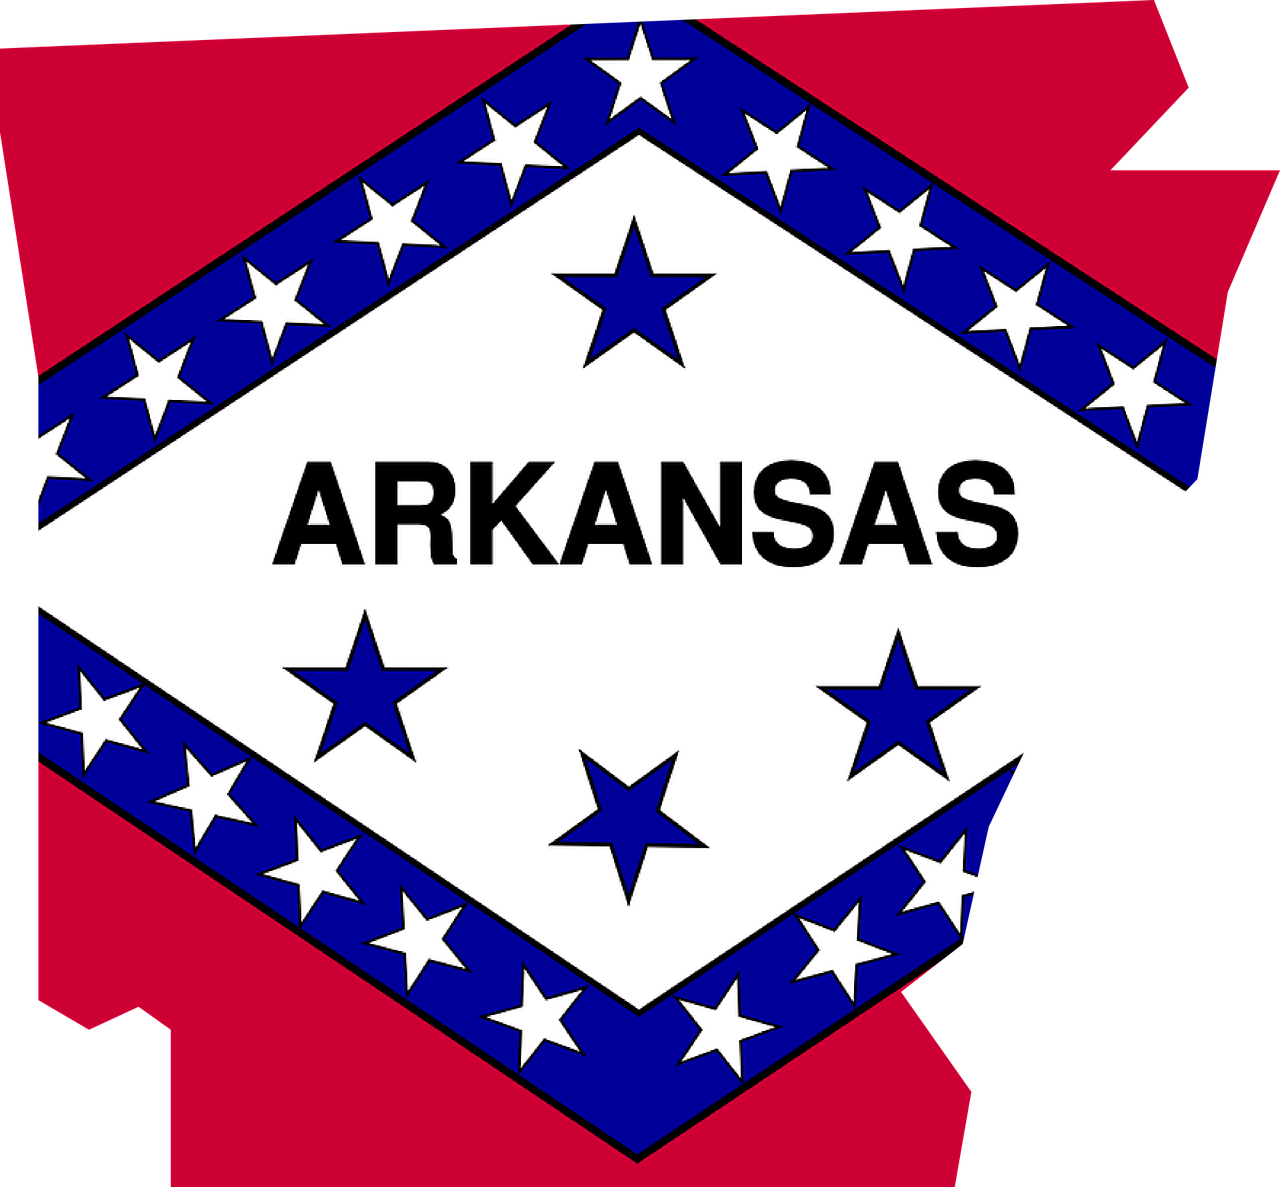 Arkansas Flag Background PNG Image